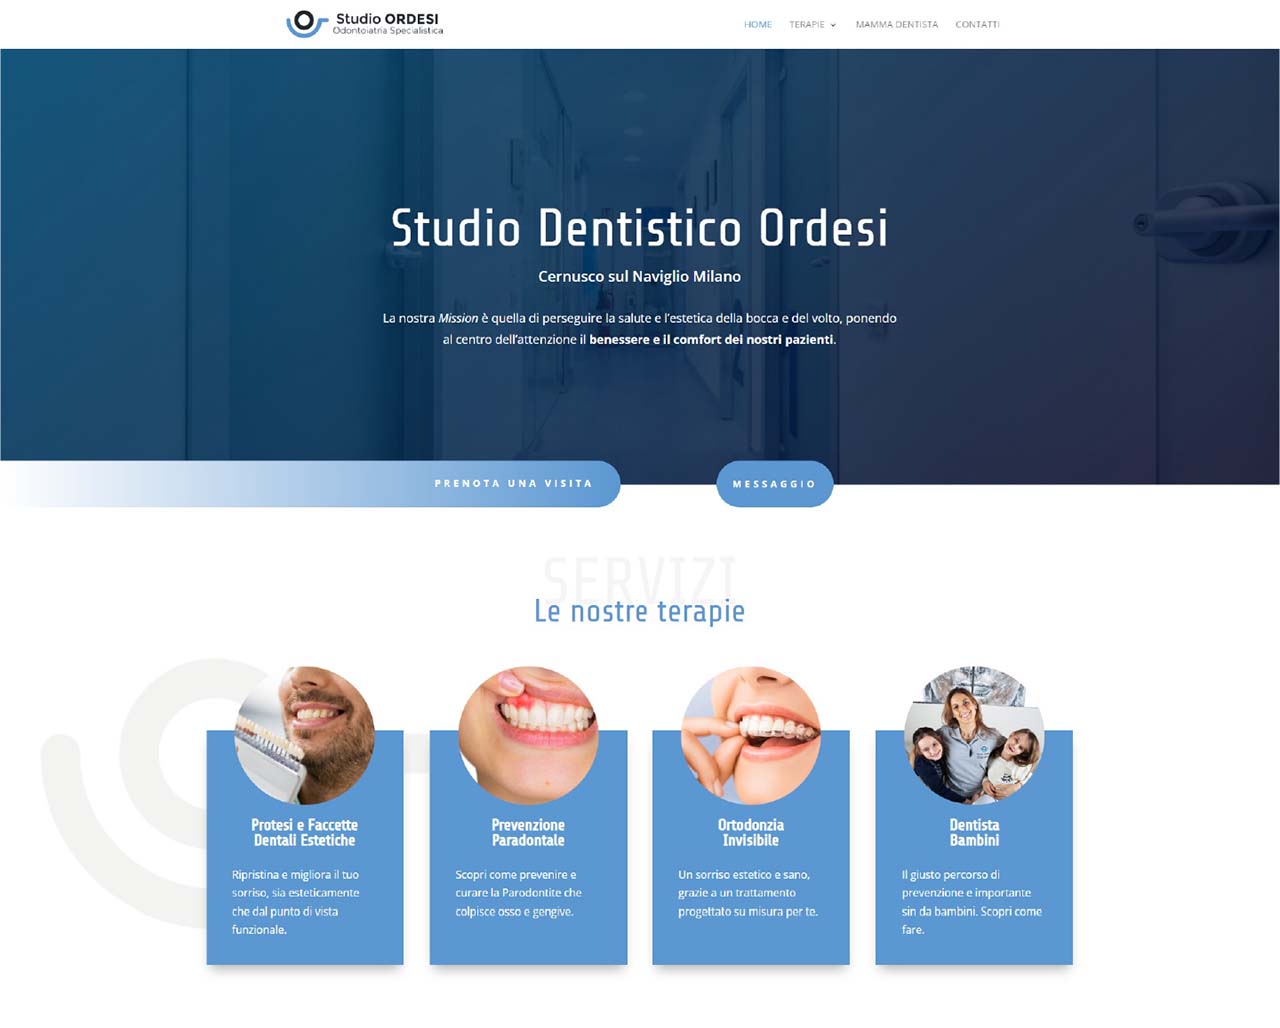 Studio dentistico Ordesi - Case History - Marketing Therapy